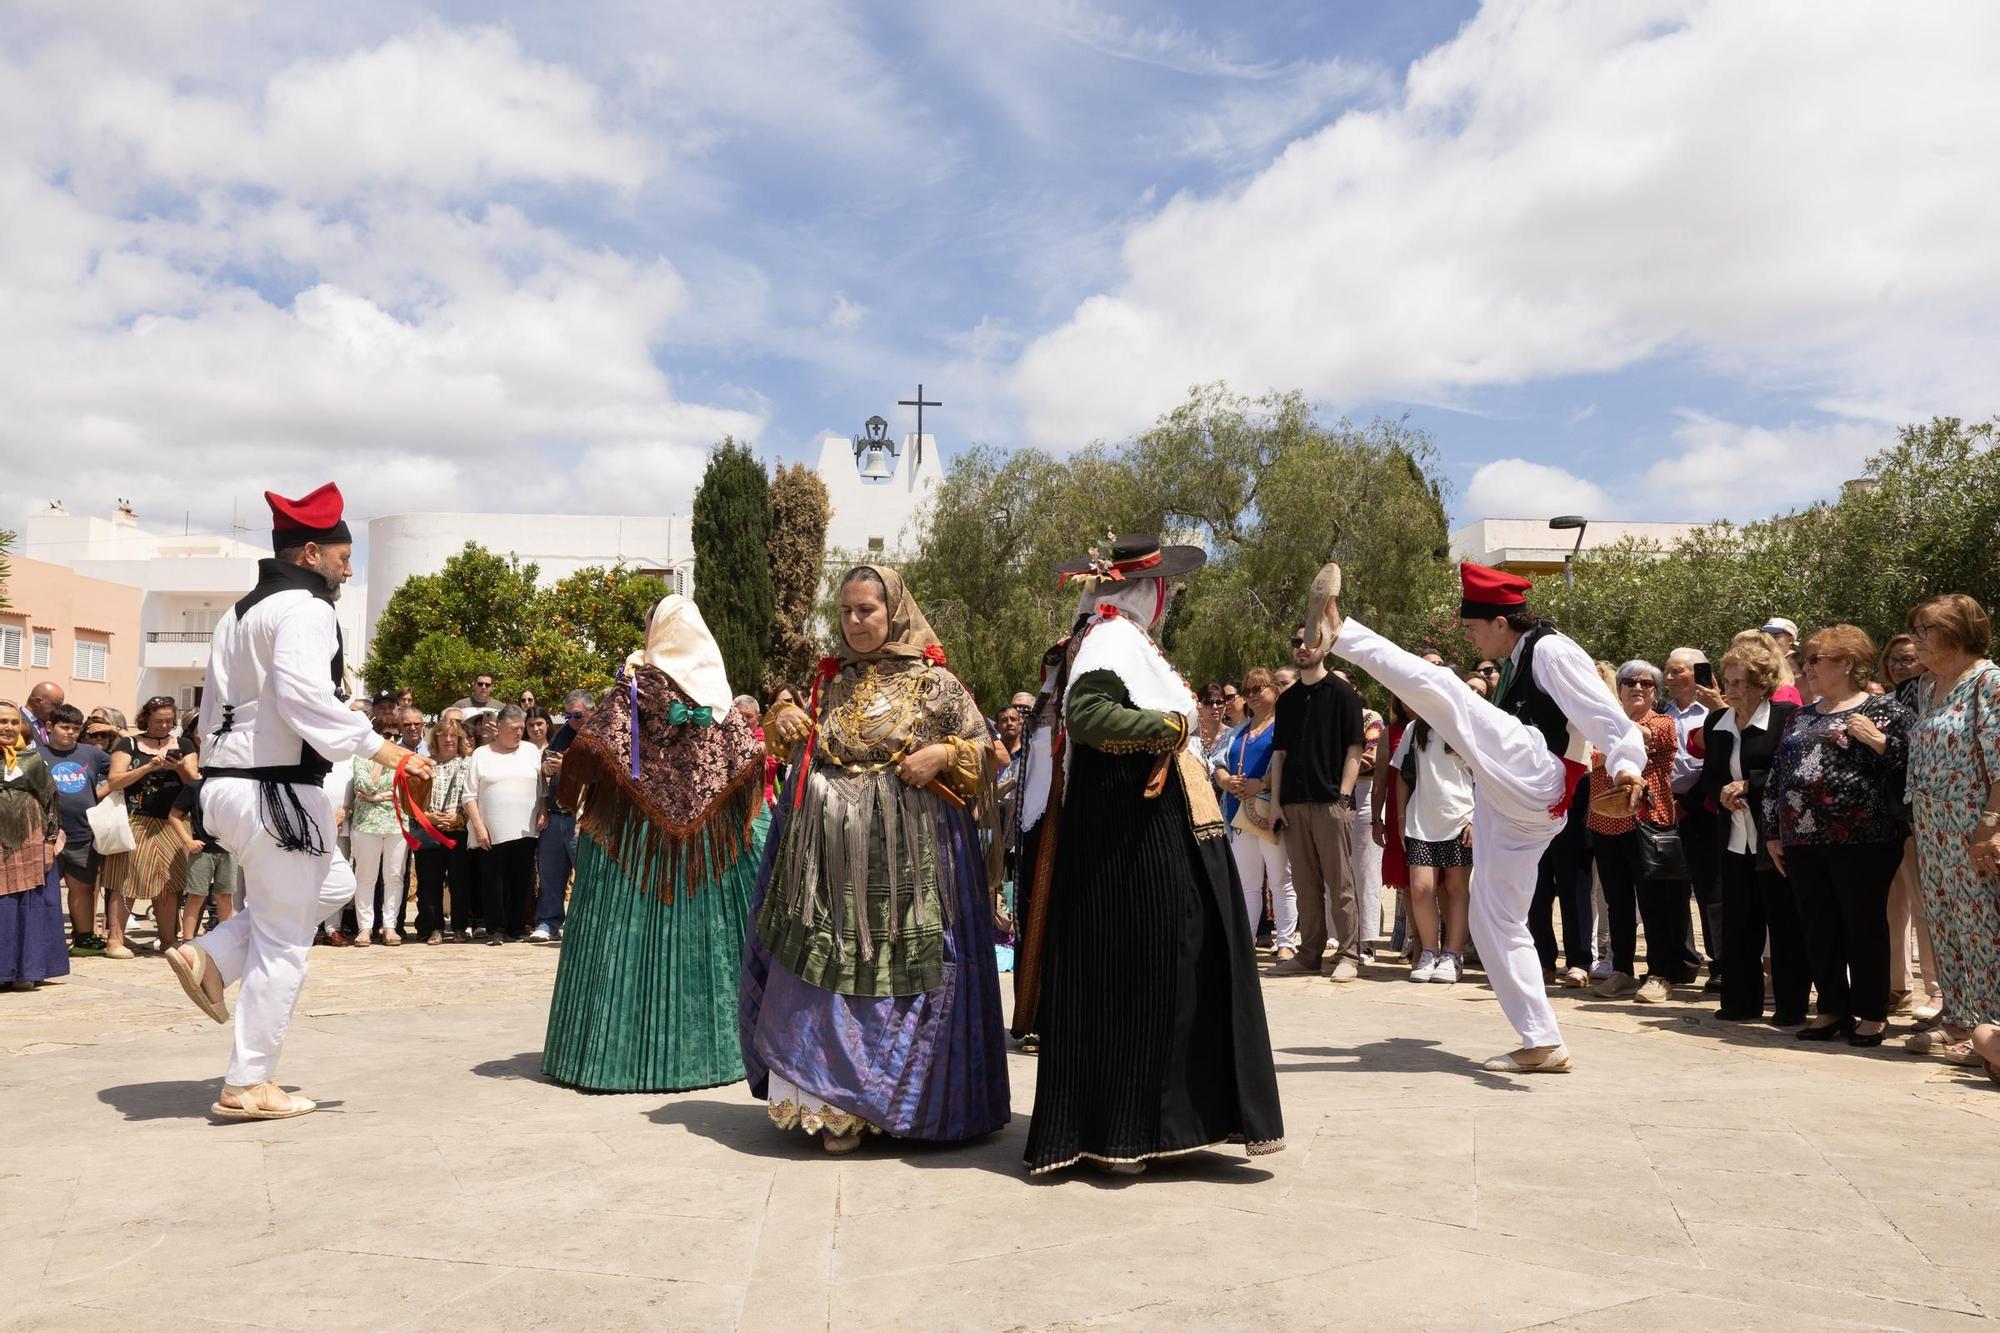 Galería: Mira aquí todas las fotos de las fiestas de Puig d'en Valls